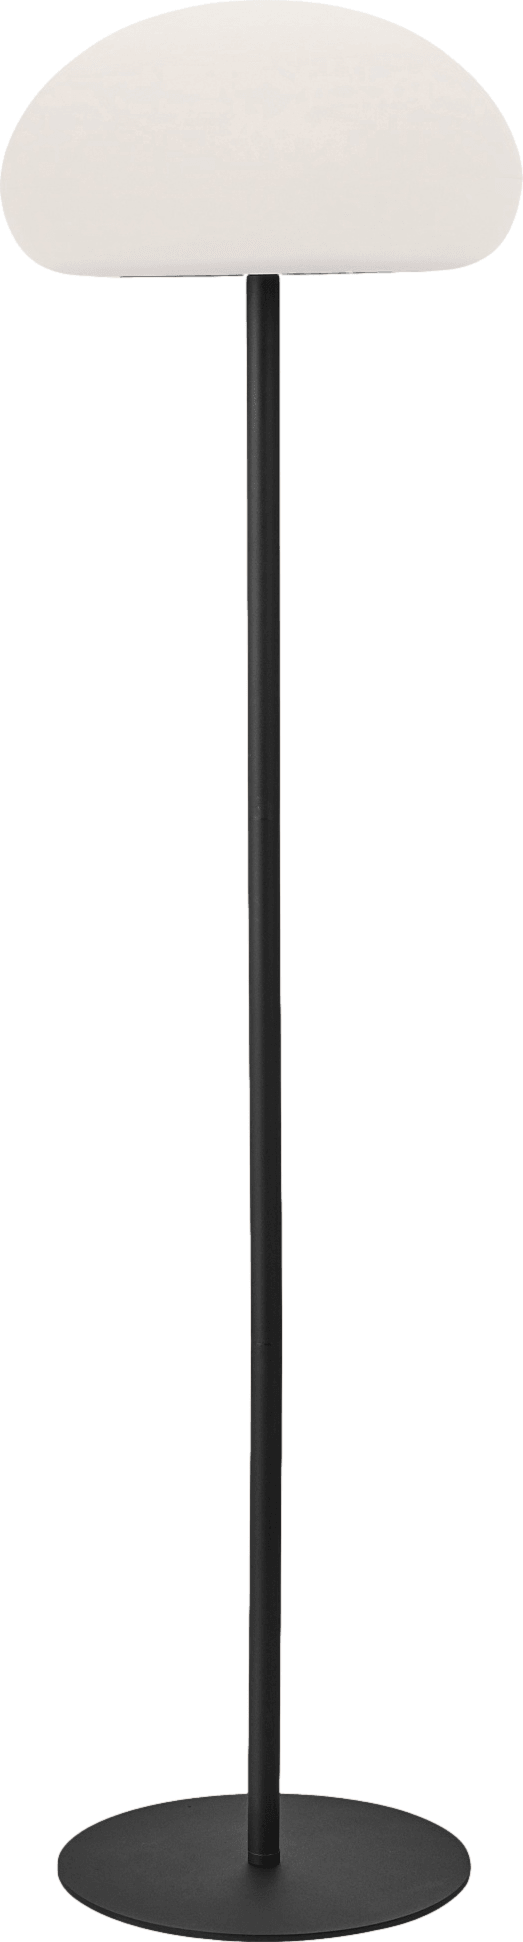 Lampa podłogowa bezprzewodowa SPONGE czarny Nordlux    Eye on Design